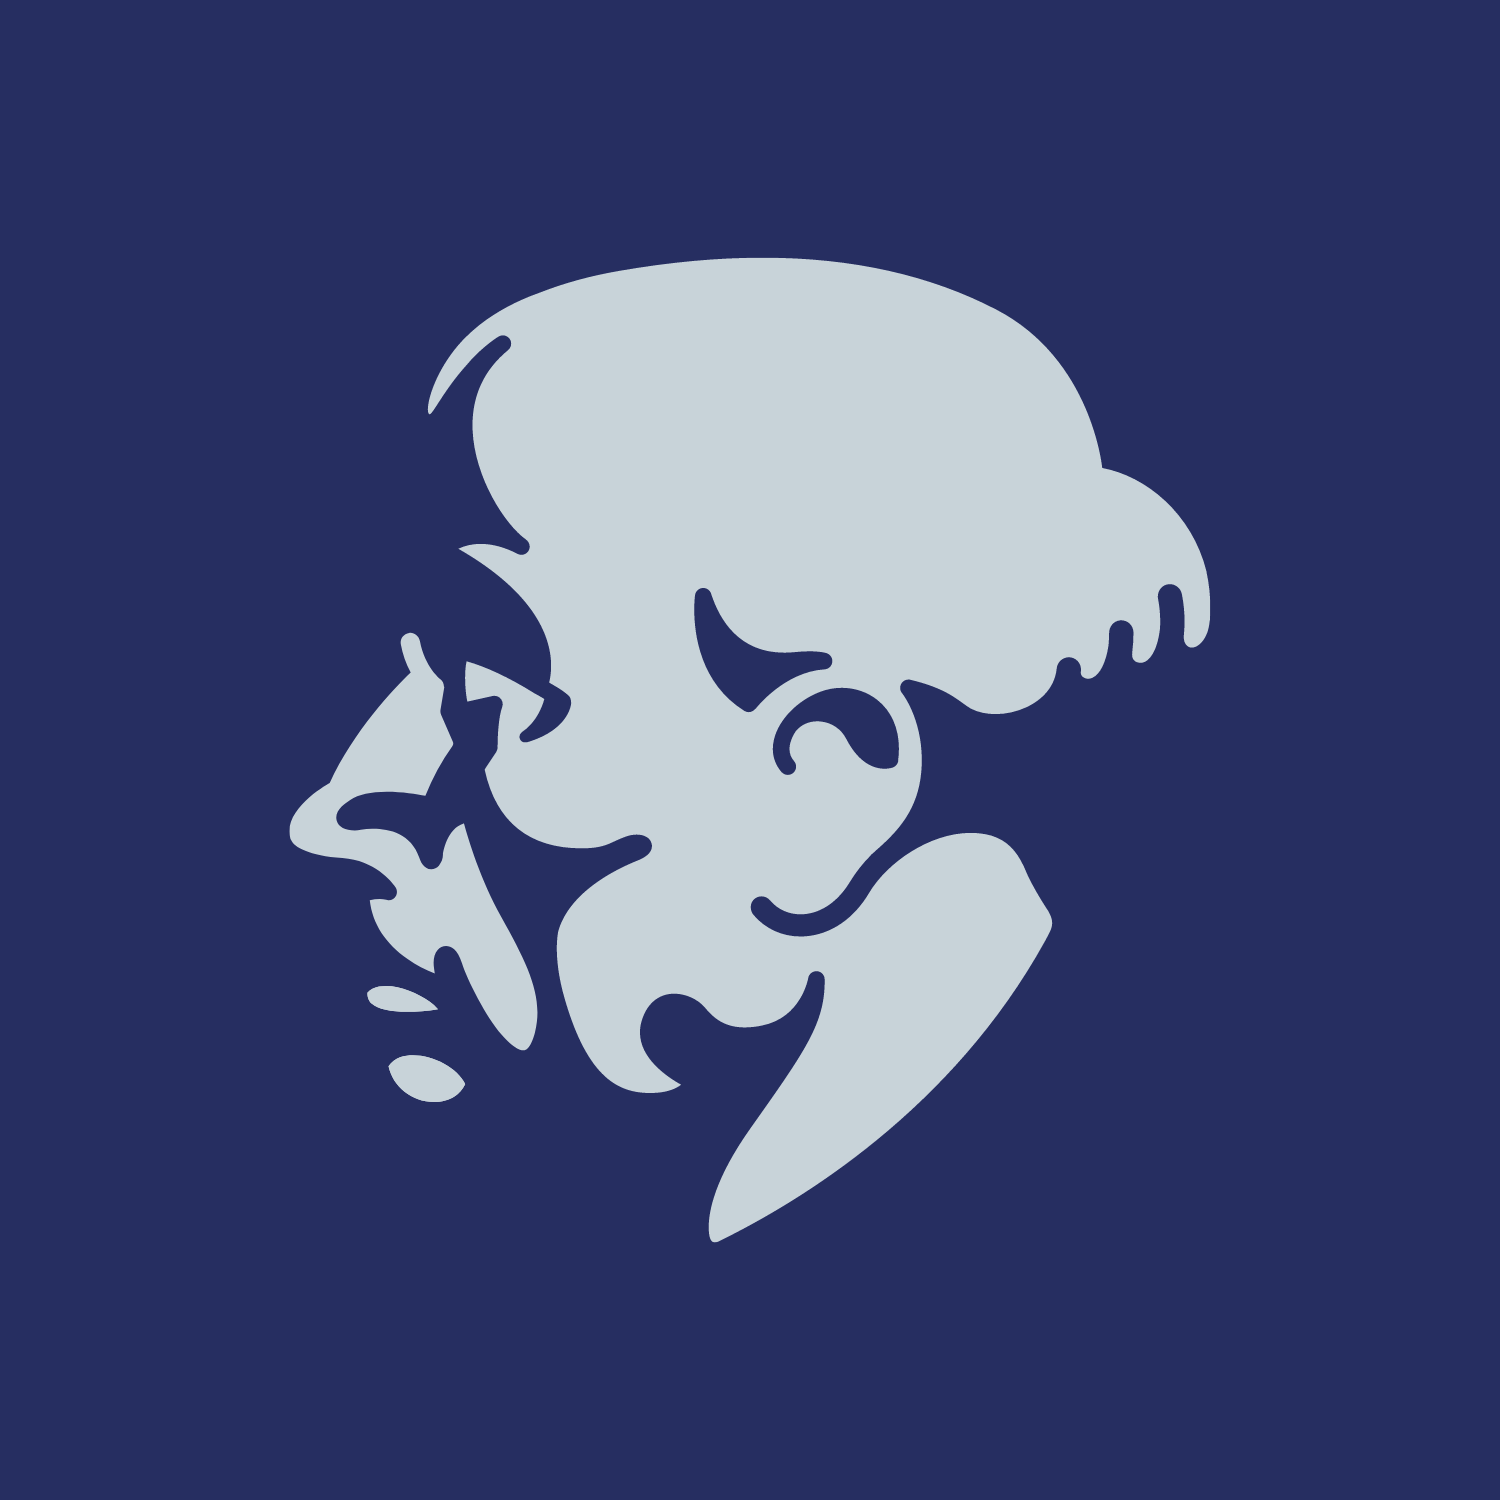 Paracelsus Medizinische Privatuniversität Logo